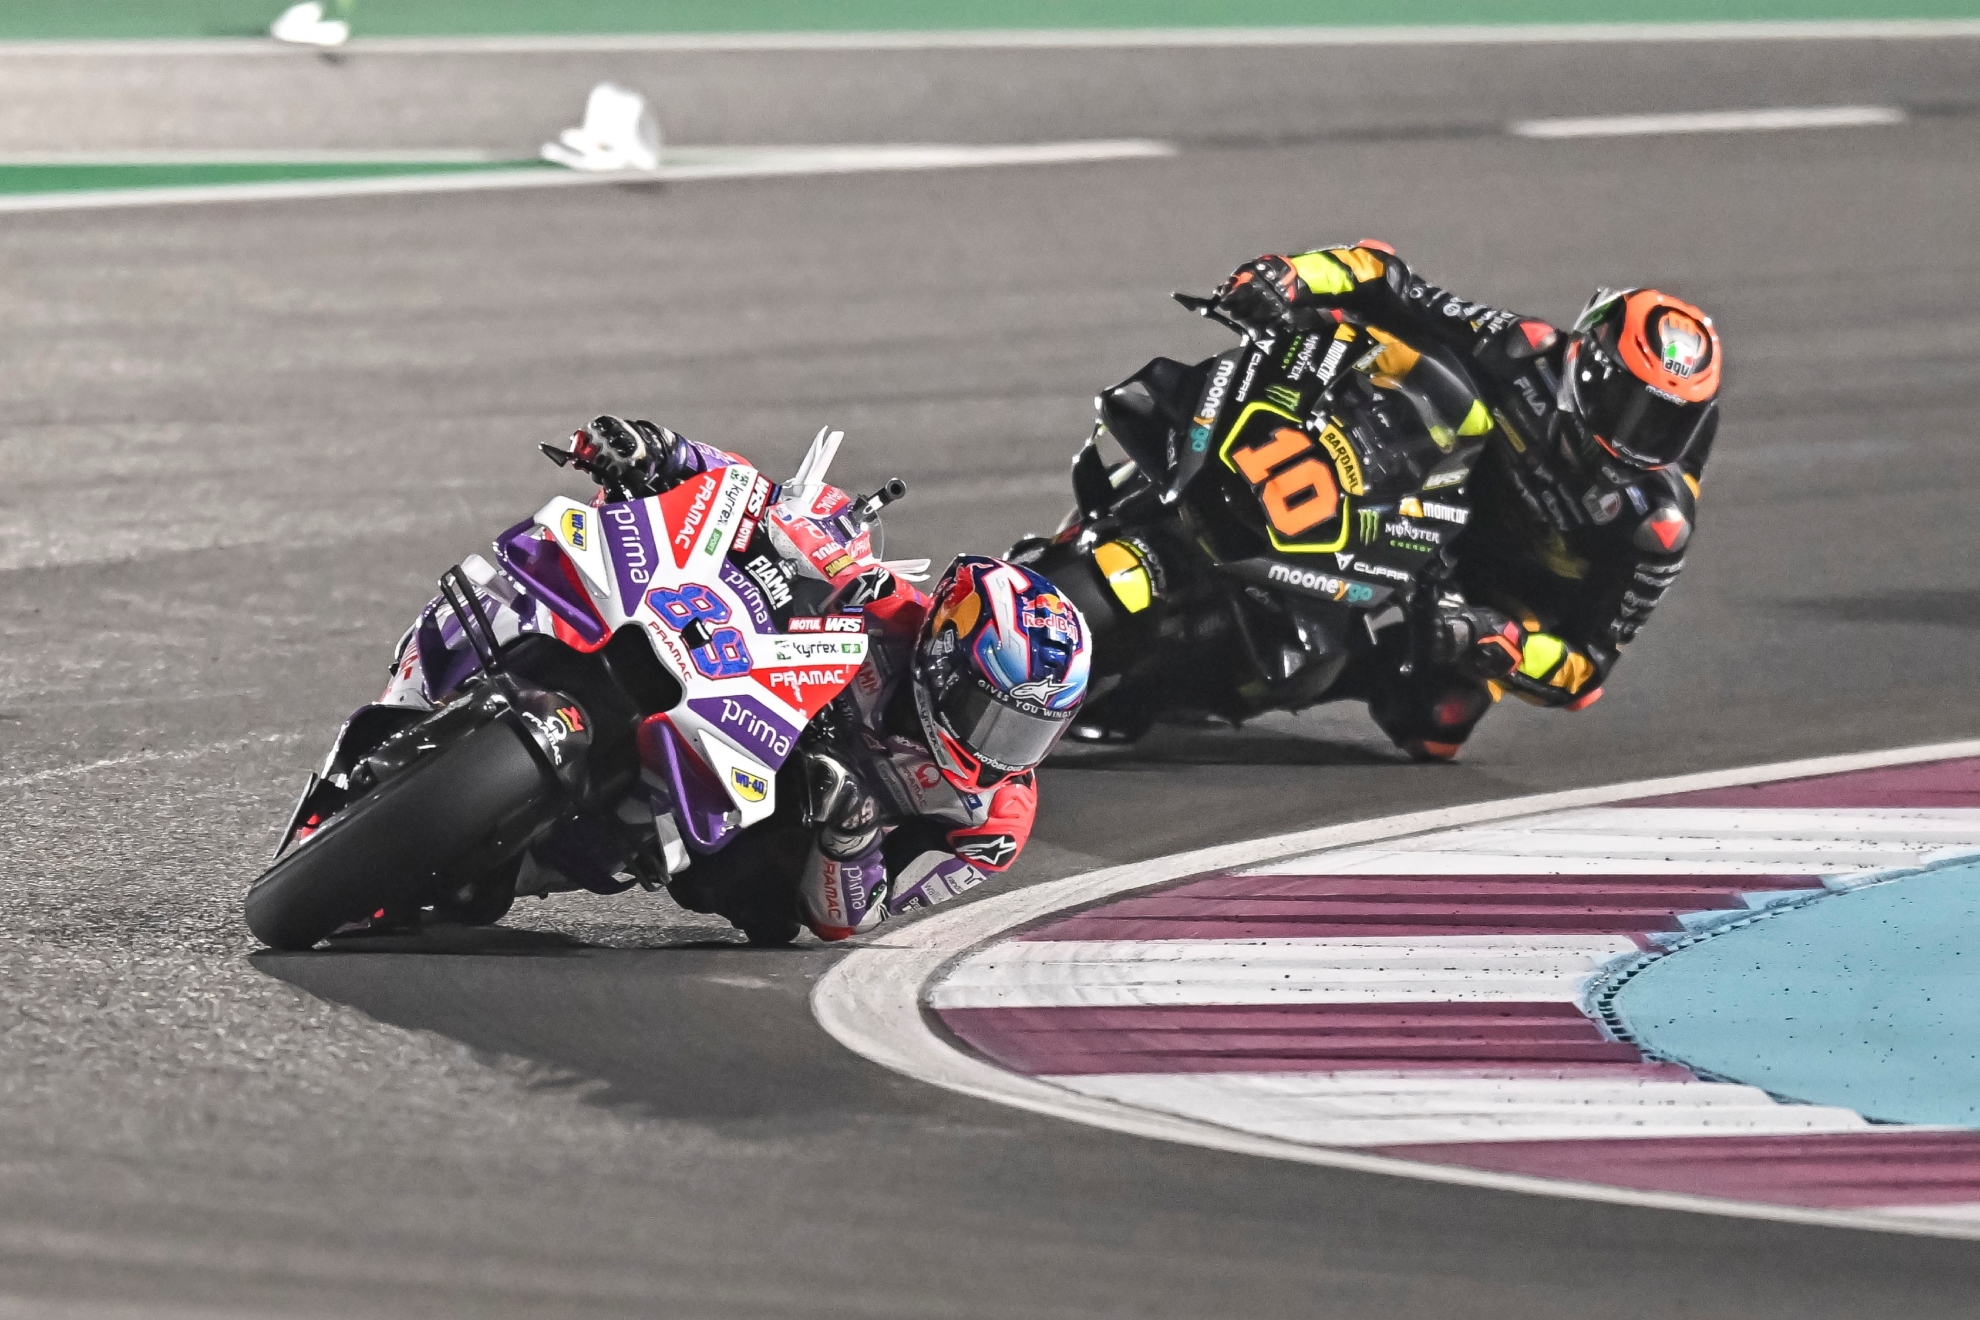 Carrera MotoGP del GP de Qatar, hoy en directo | Jorge Mart�n en vivo